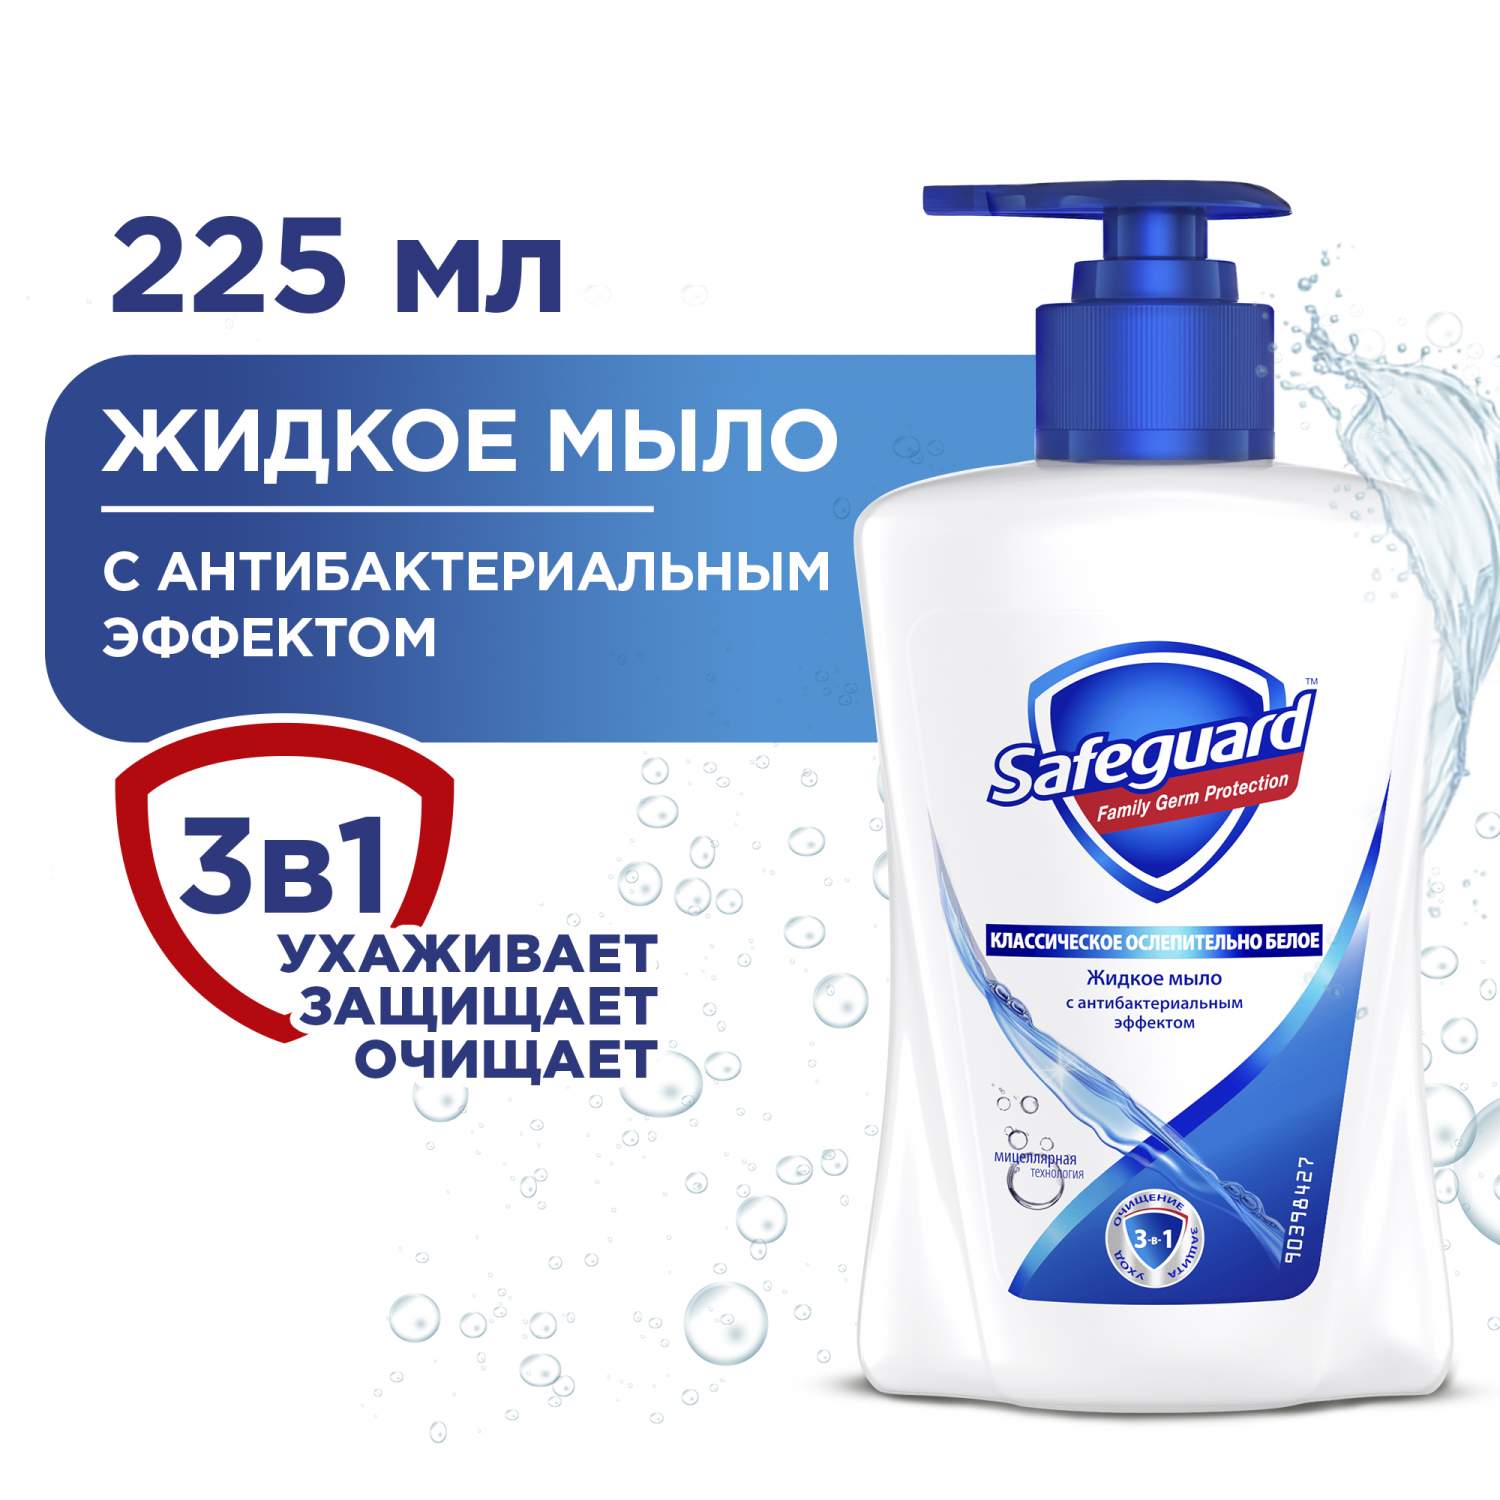 Жидкое мыло Safeguard - купить жидкое мыло Сейфгад, цены на Мегамаркет